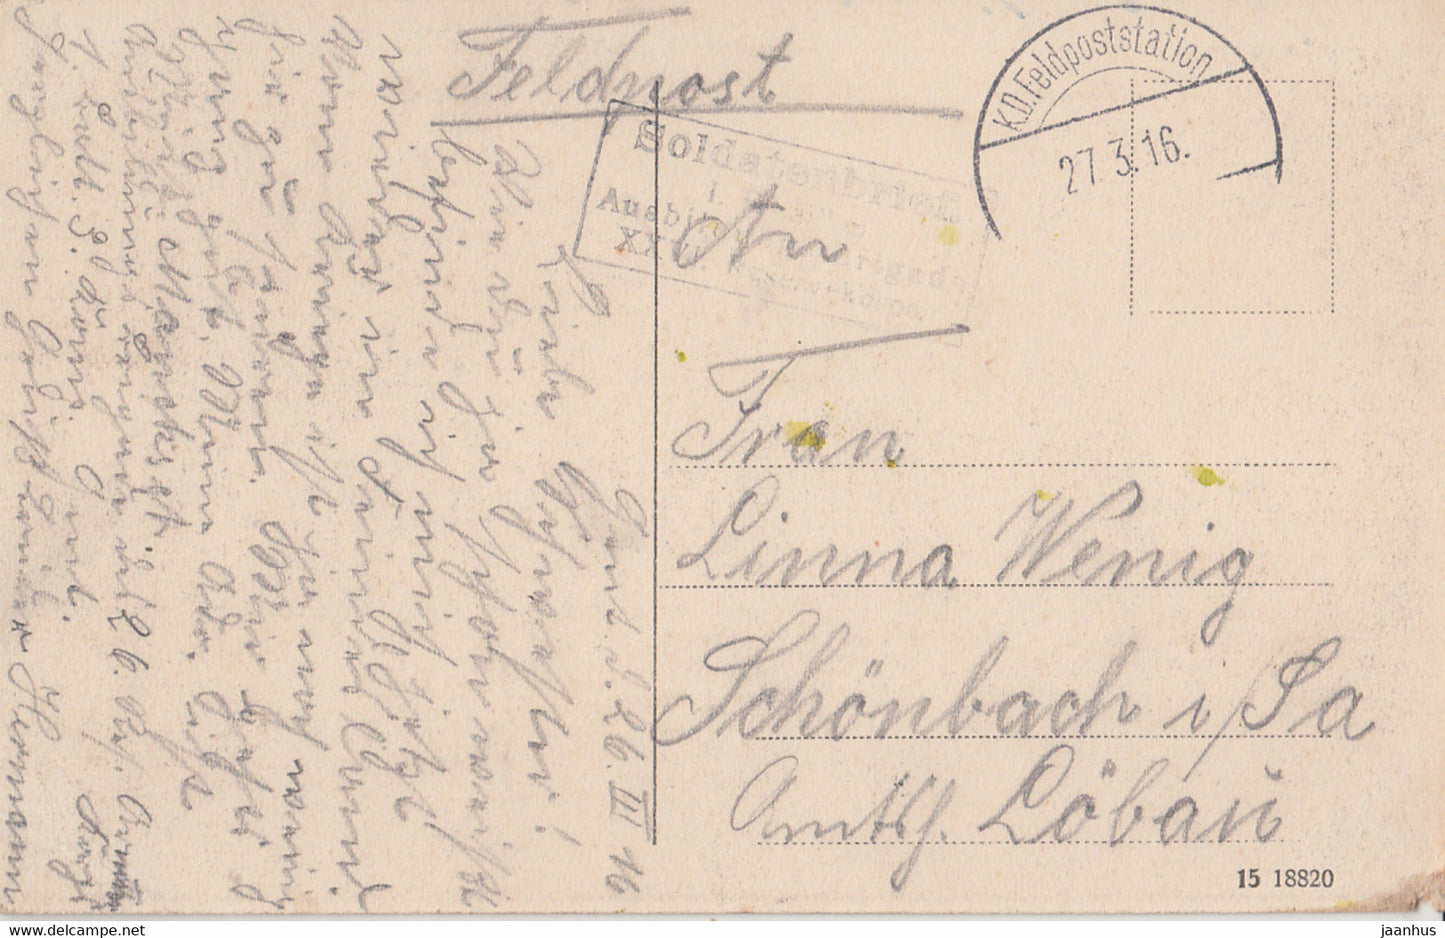 Coburg - Schloss Ehrenburg - Schloss - Feldpost - Soldatenbrief - KD - alte Postkarte - 1916 - Deutschland - gebraucht